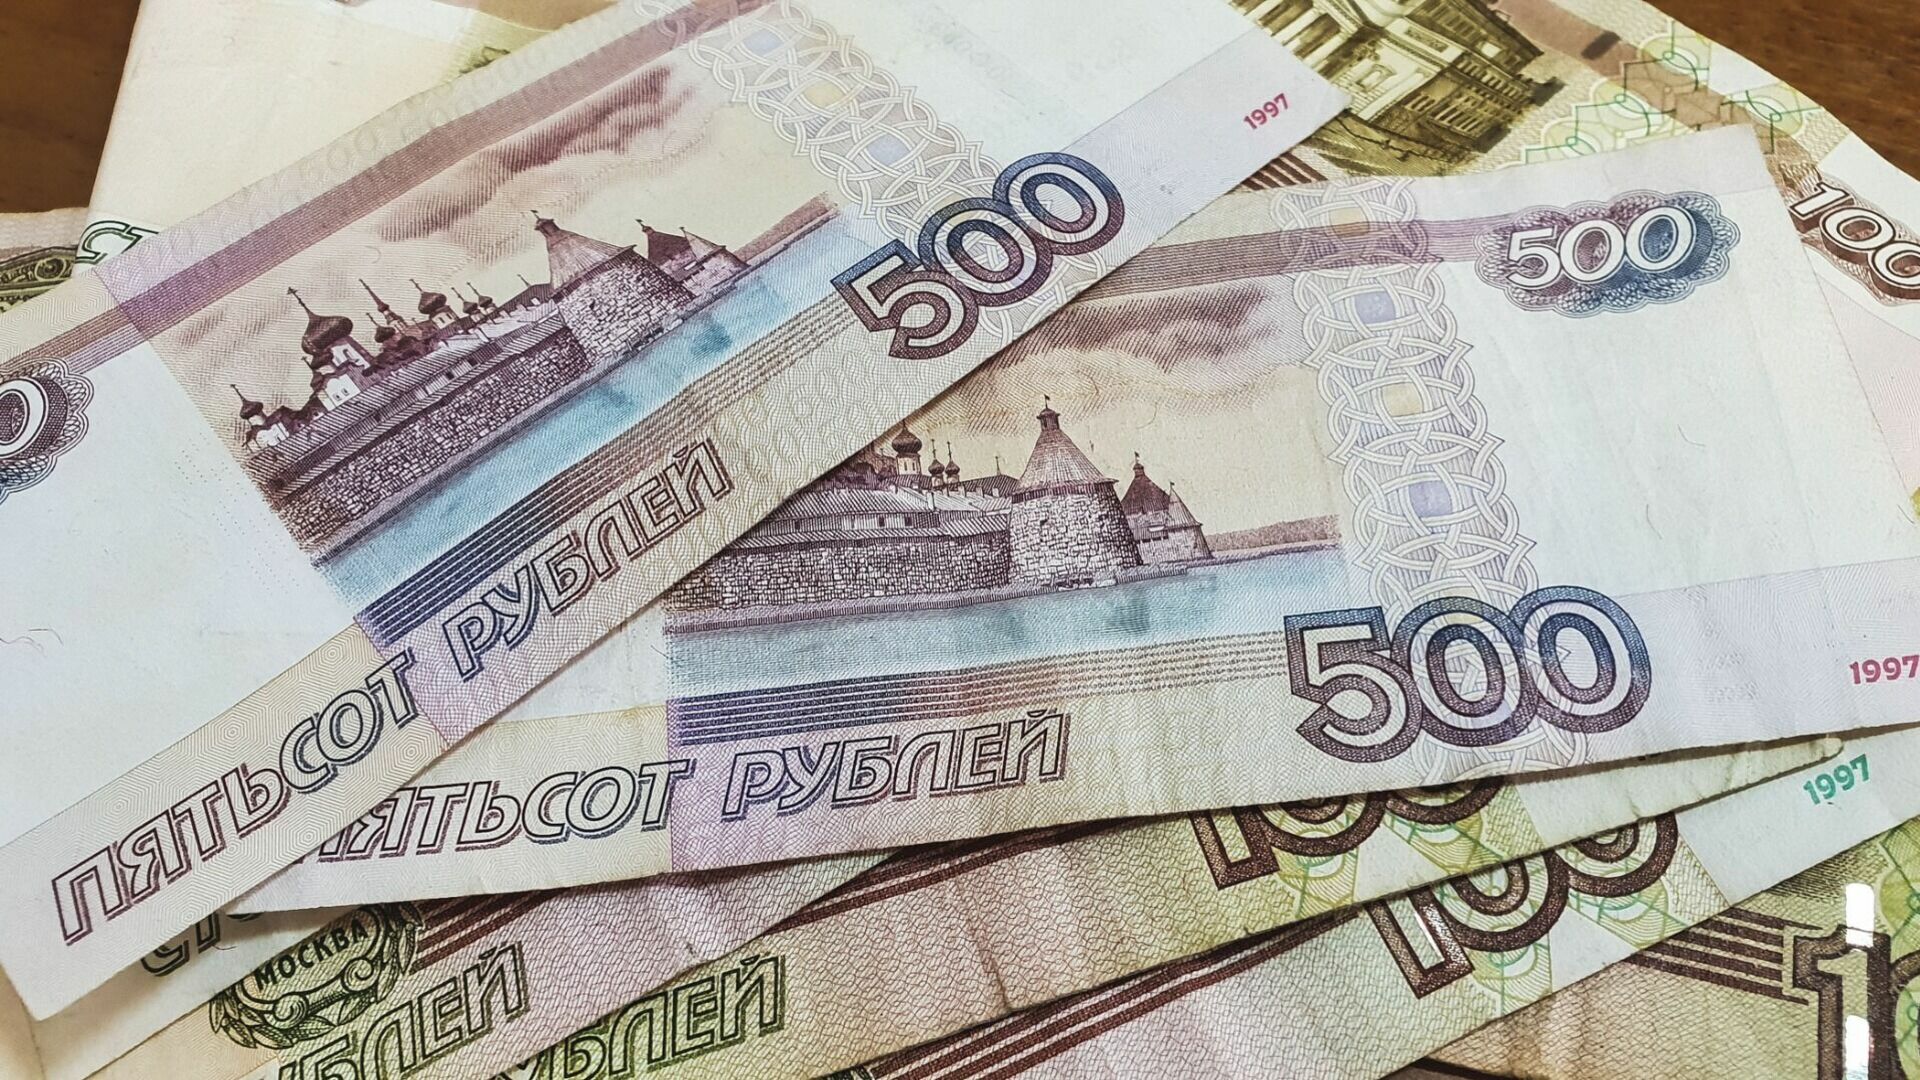 МВД Удмуртии заплатит 3 млн рублей за создание пропагандистской телепрограммы